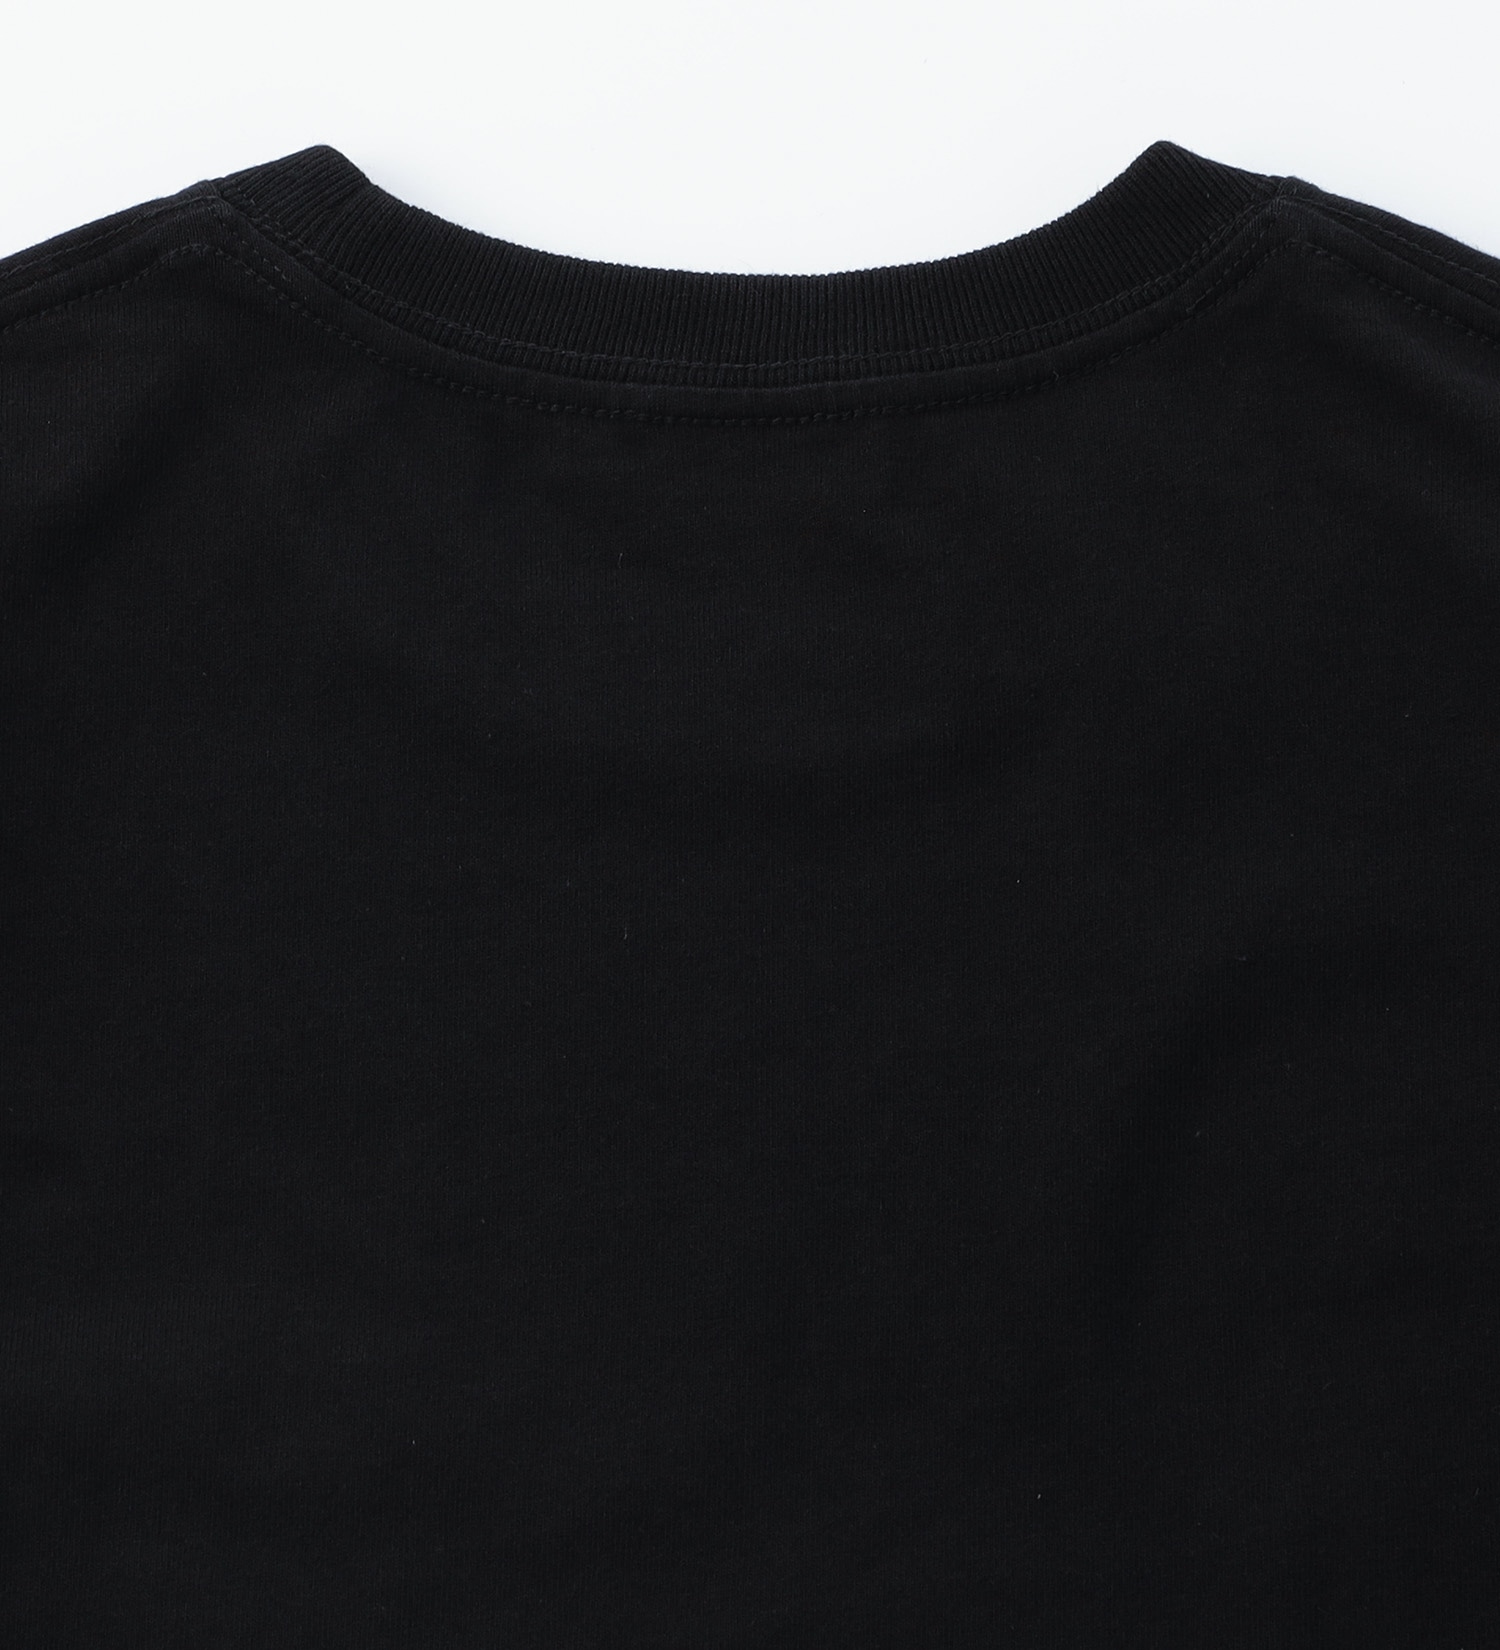 EDWIN(エドウイン)の【BLACKFRIDAY】ポケットロゴTシャツ 半袖【アウトレット店舗・WEB限定】|トップス/Tシャツ/カットソー/メンズ|ブラック